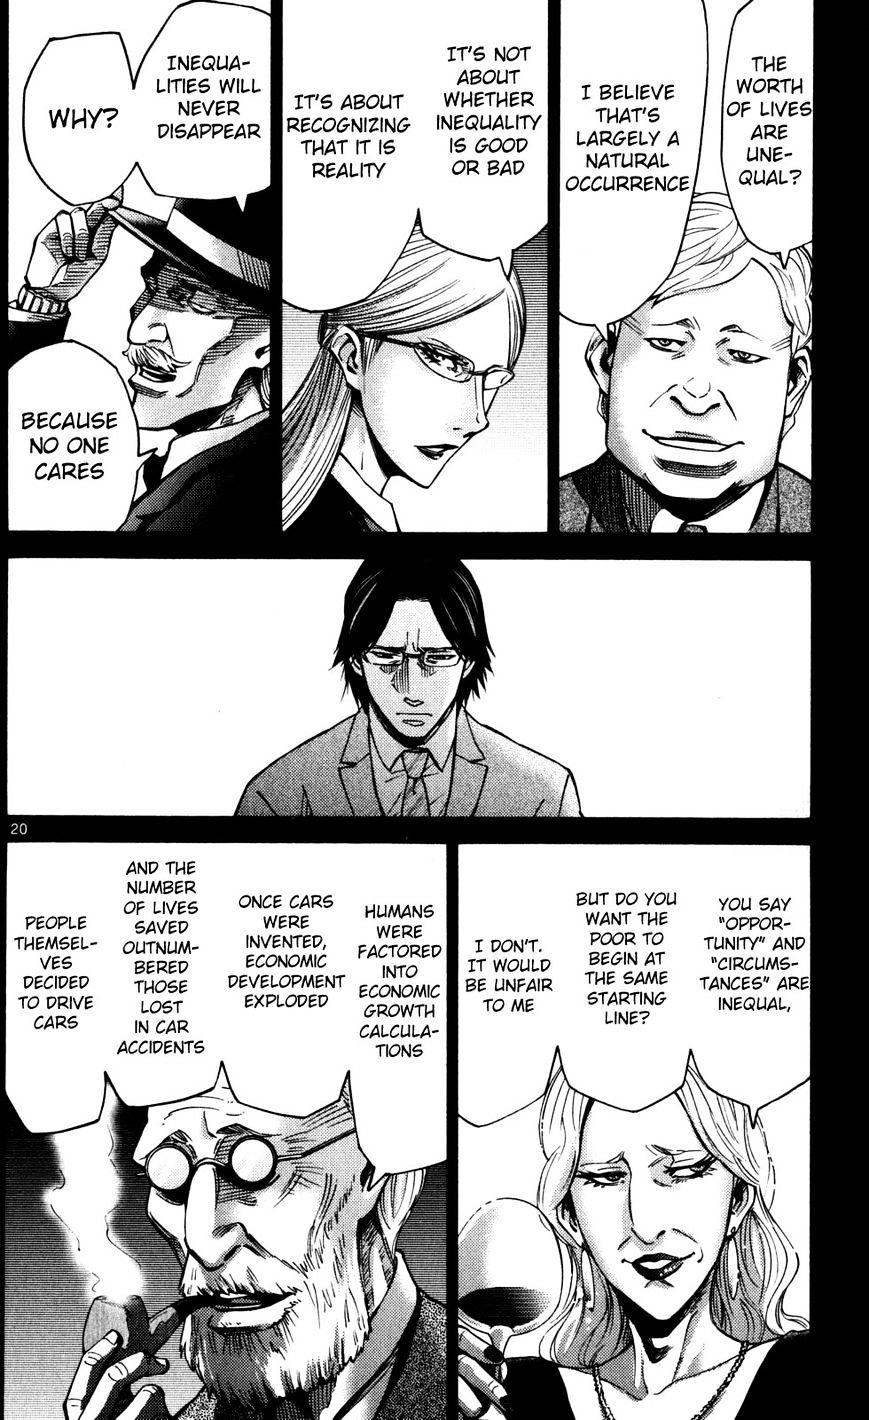 Imawa No Kuni No Alice Chapter 51.4 : Side Story 6 - King Of Diamonds (4) page 23 - Mangakakalot